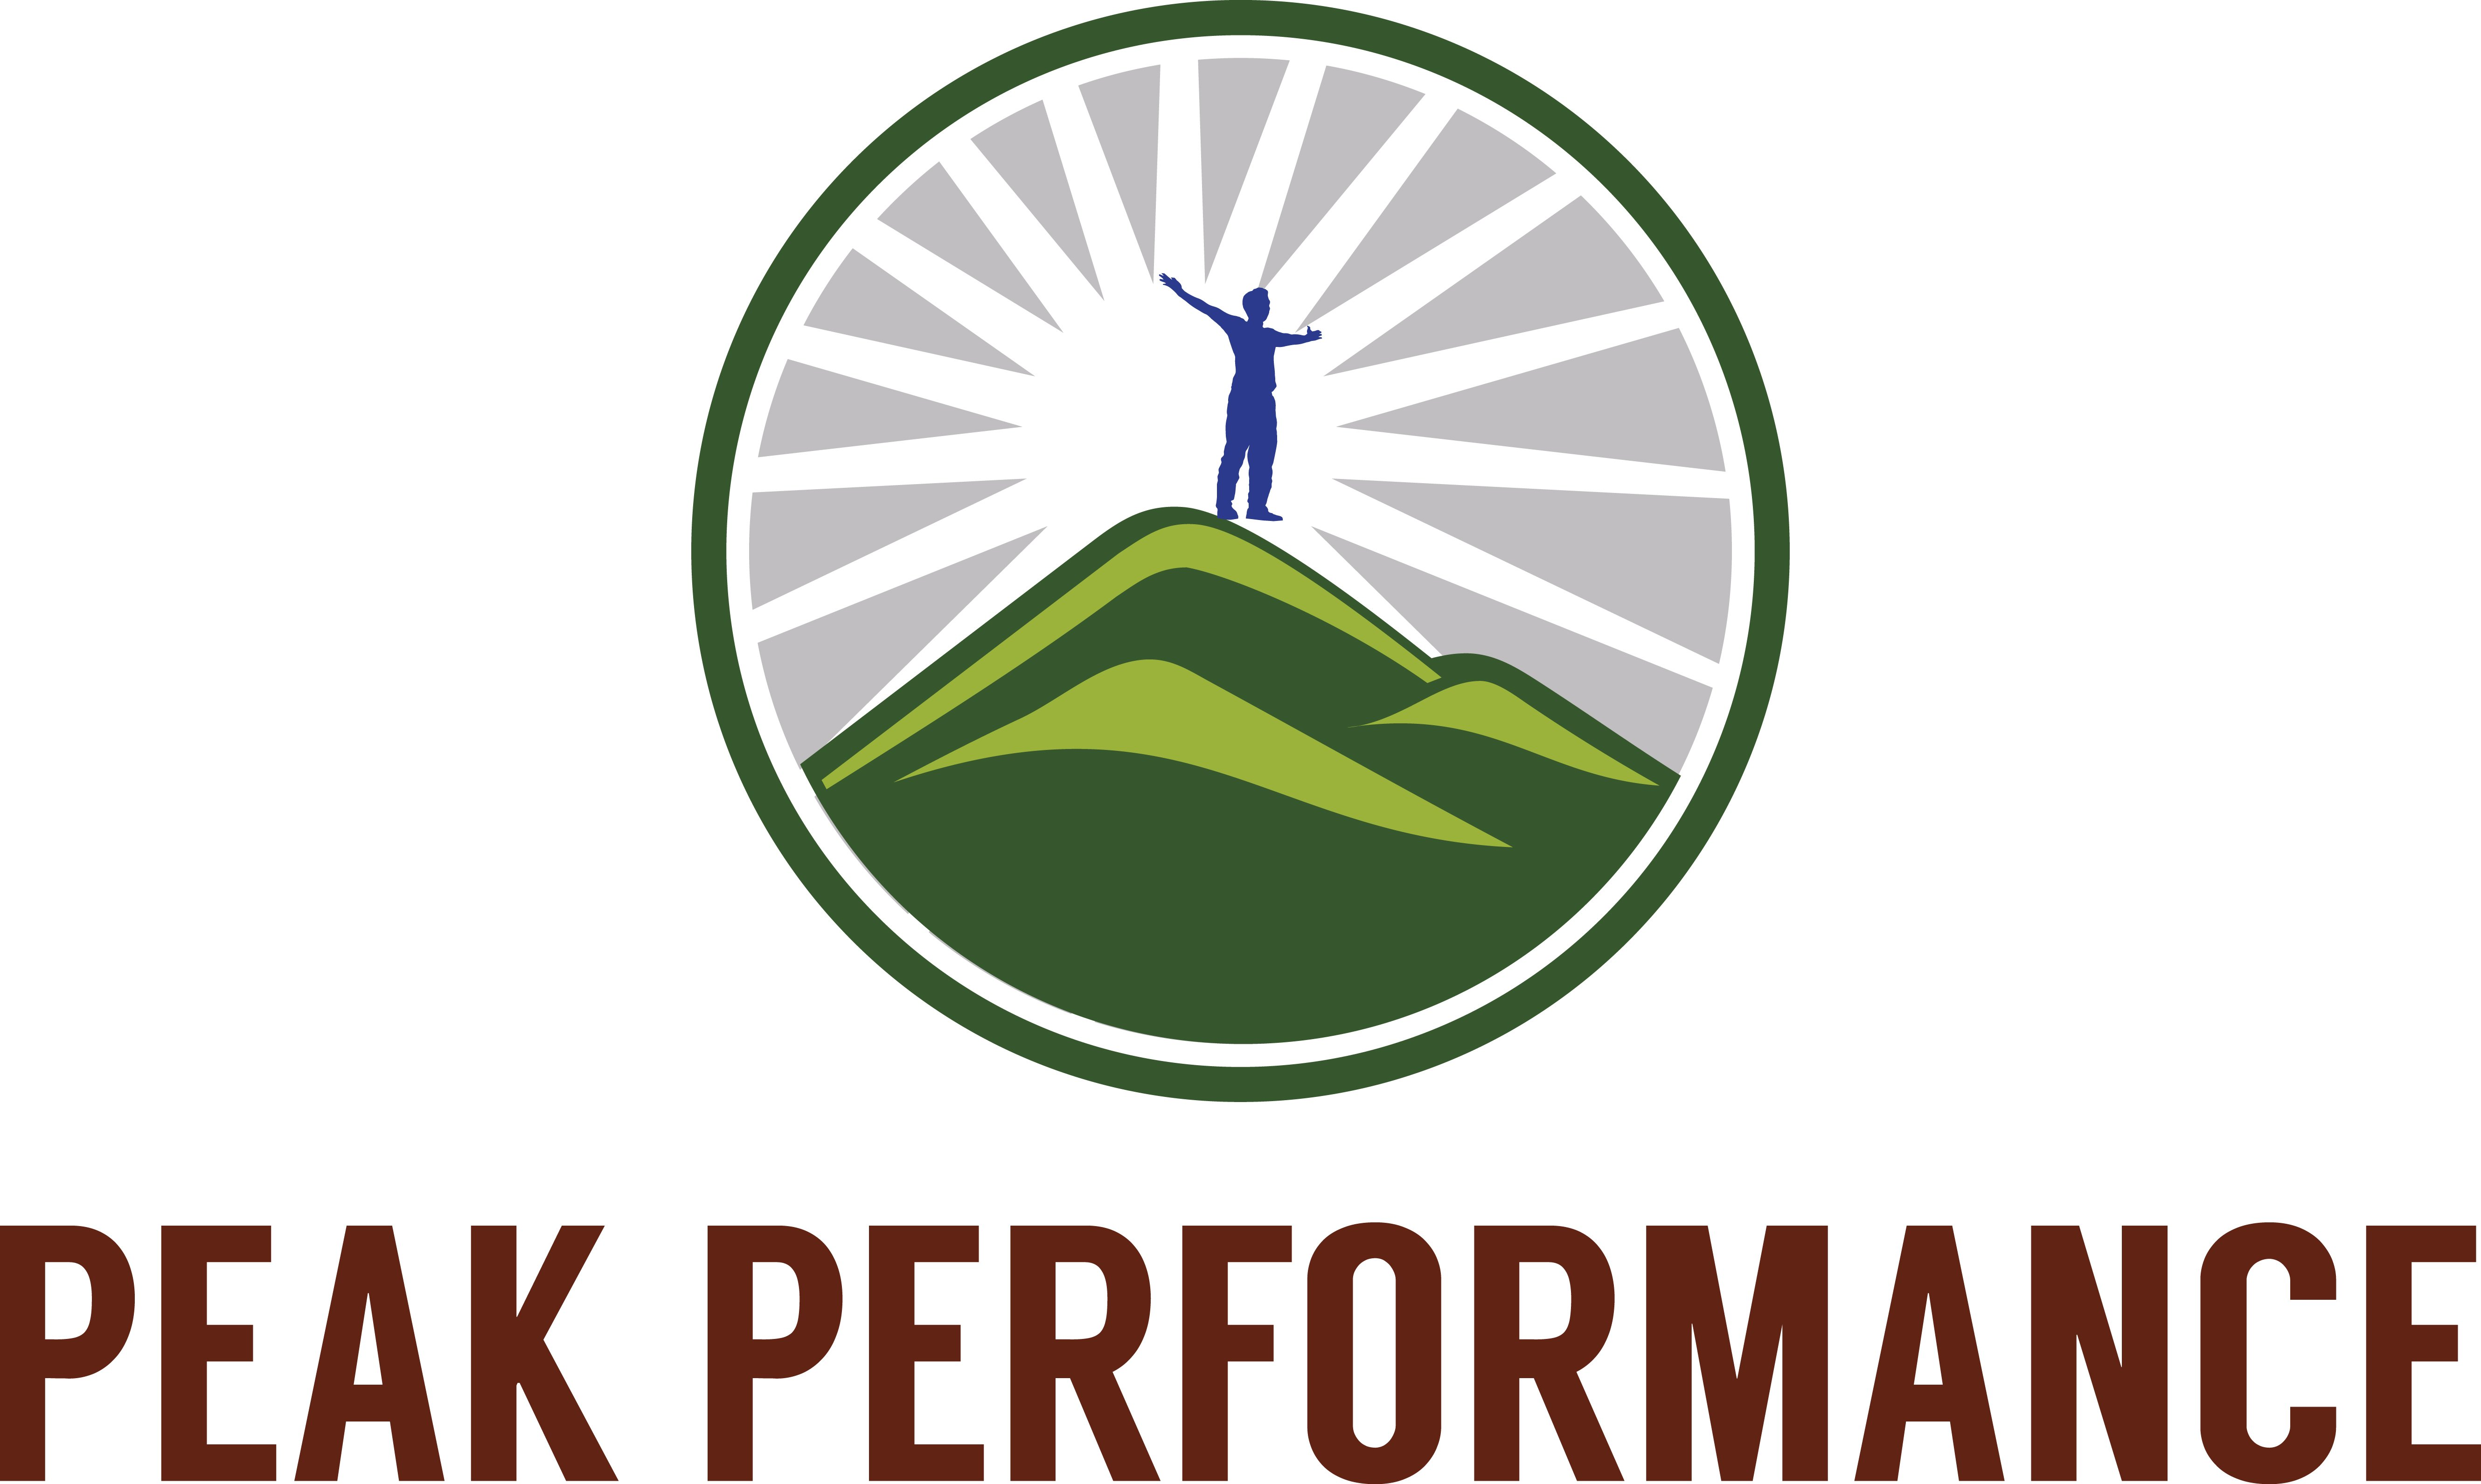 PEAK PERFORMANCE - Peak Performance Life, LLC Trademark Registration